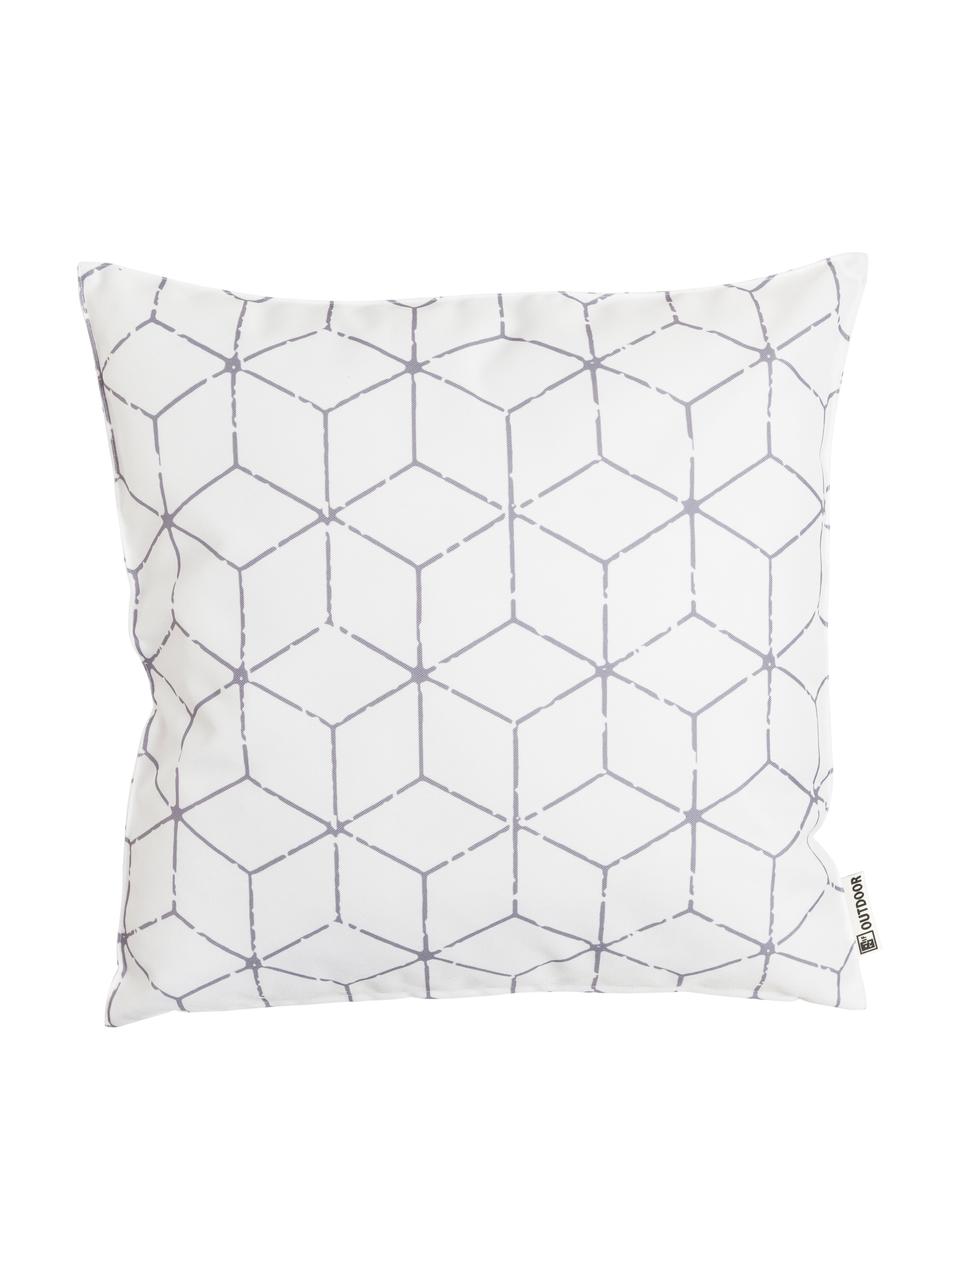 Outdoor-Kissen Cube mit grafischem Muster in Grau/Weiß, mit Inlett, 100% Polyester, Weiß, Grau, 47 x 47 cm